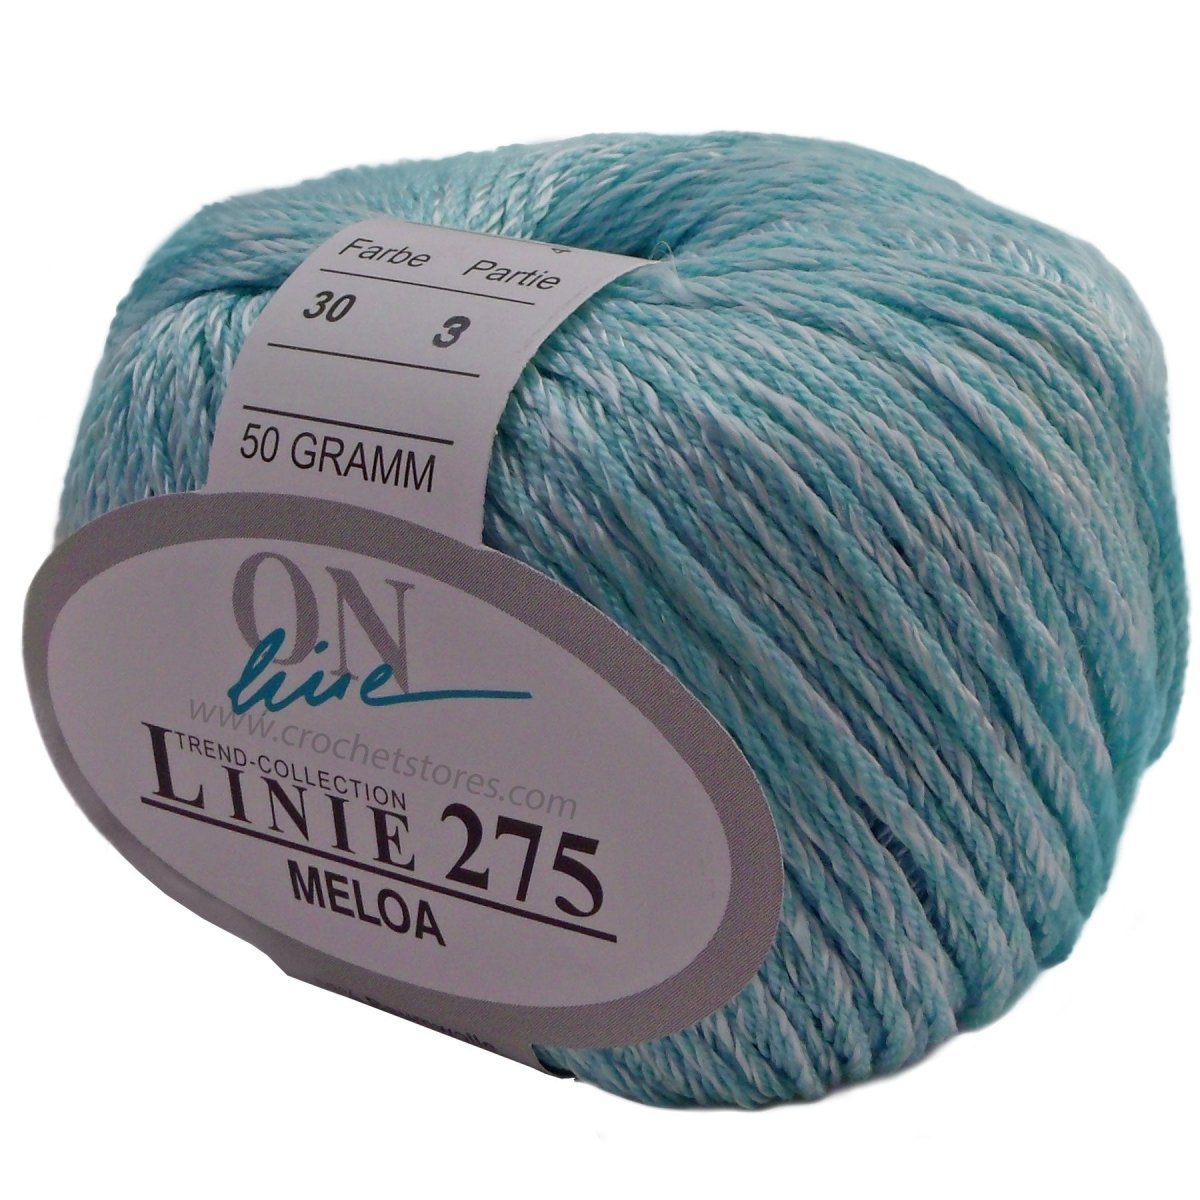 MELOA - Crochetstores110275-00304014366143840